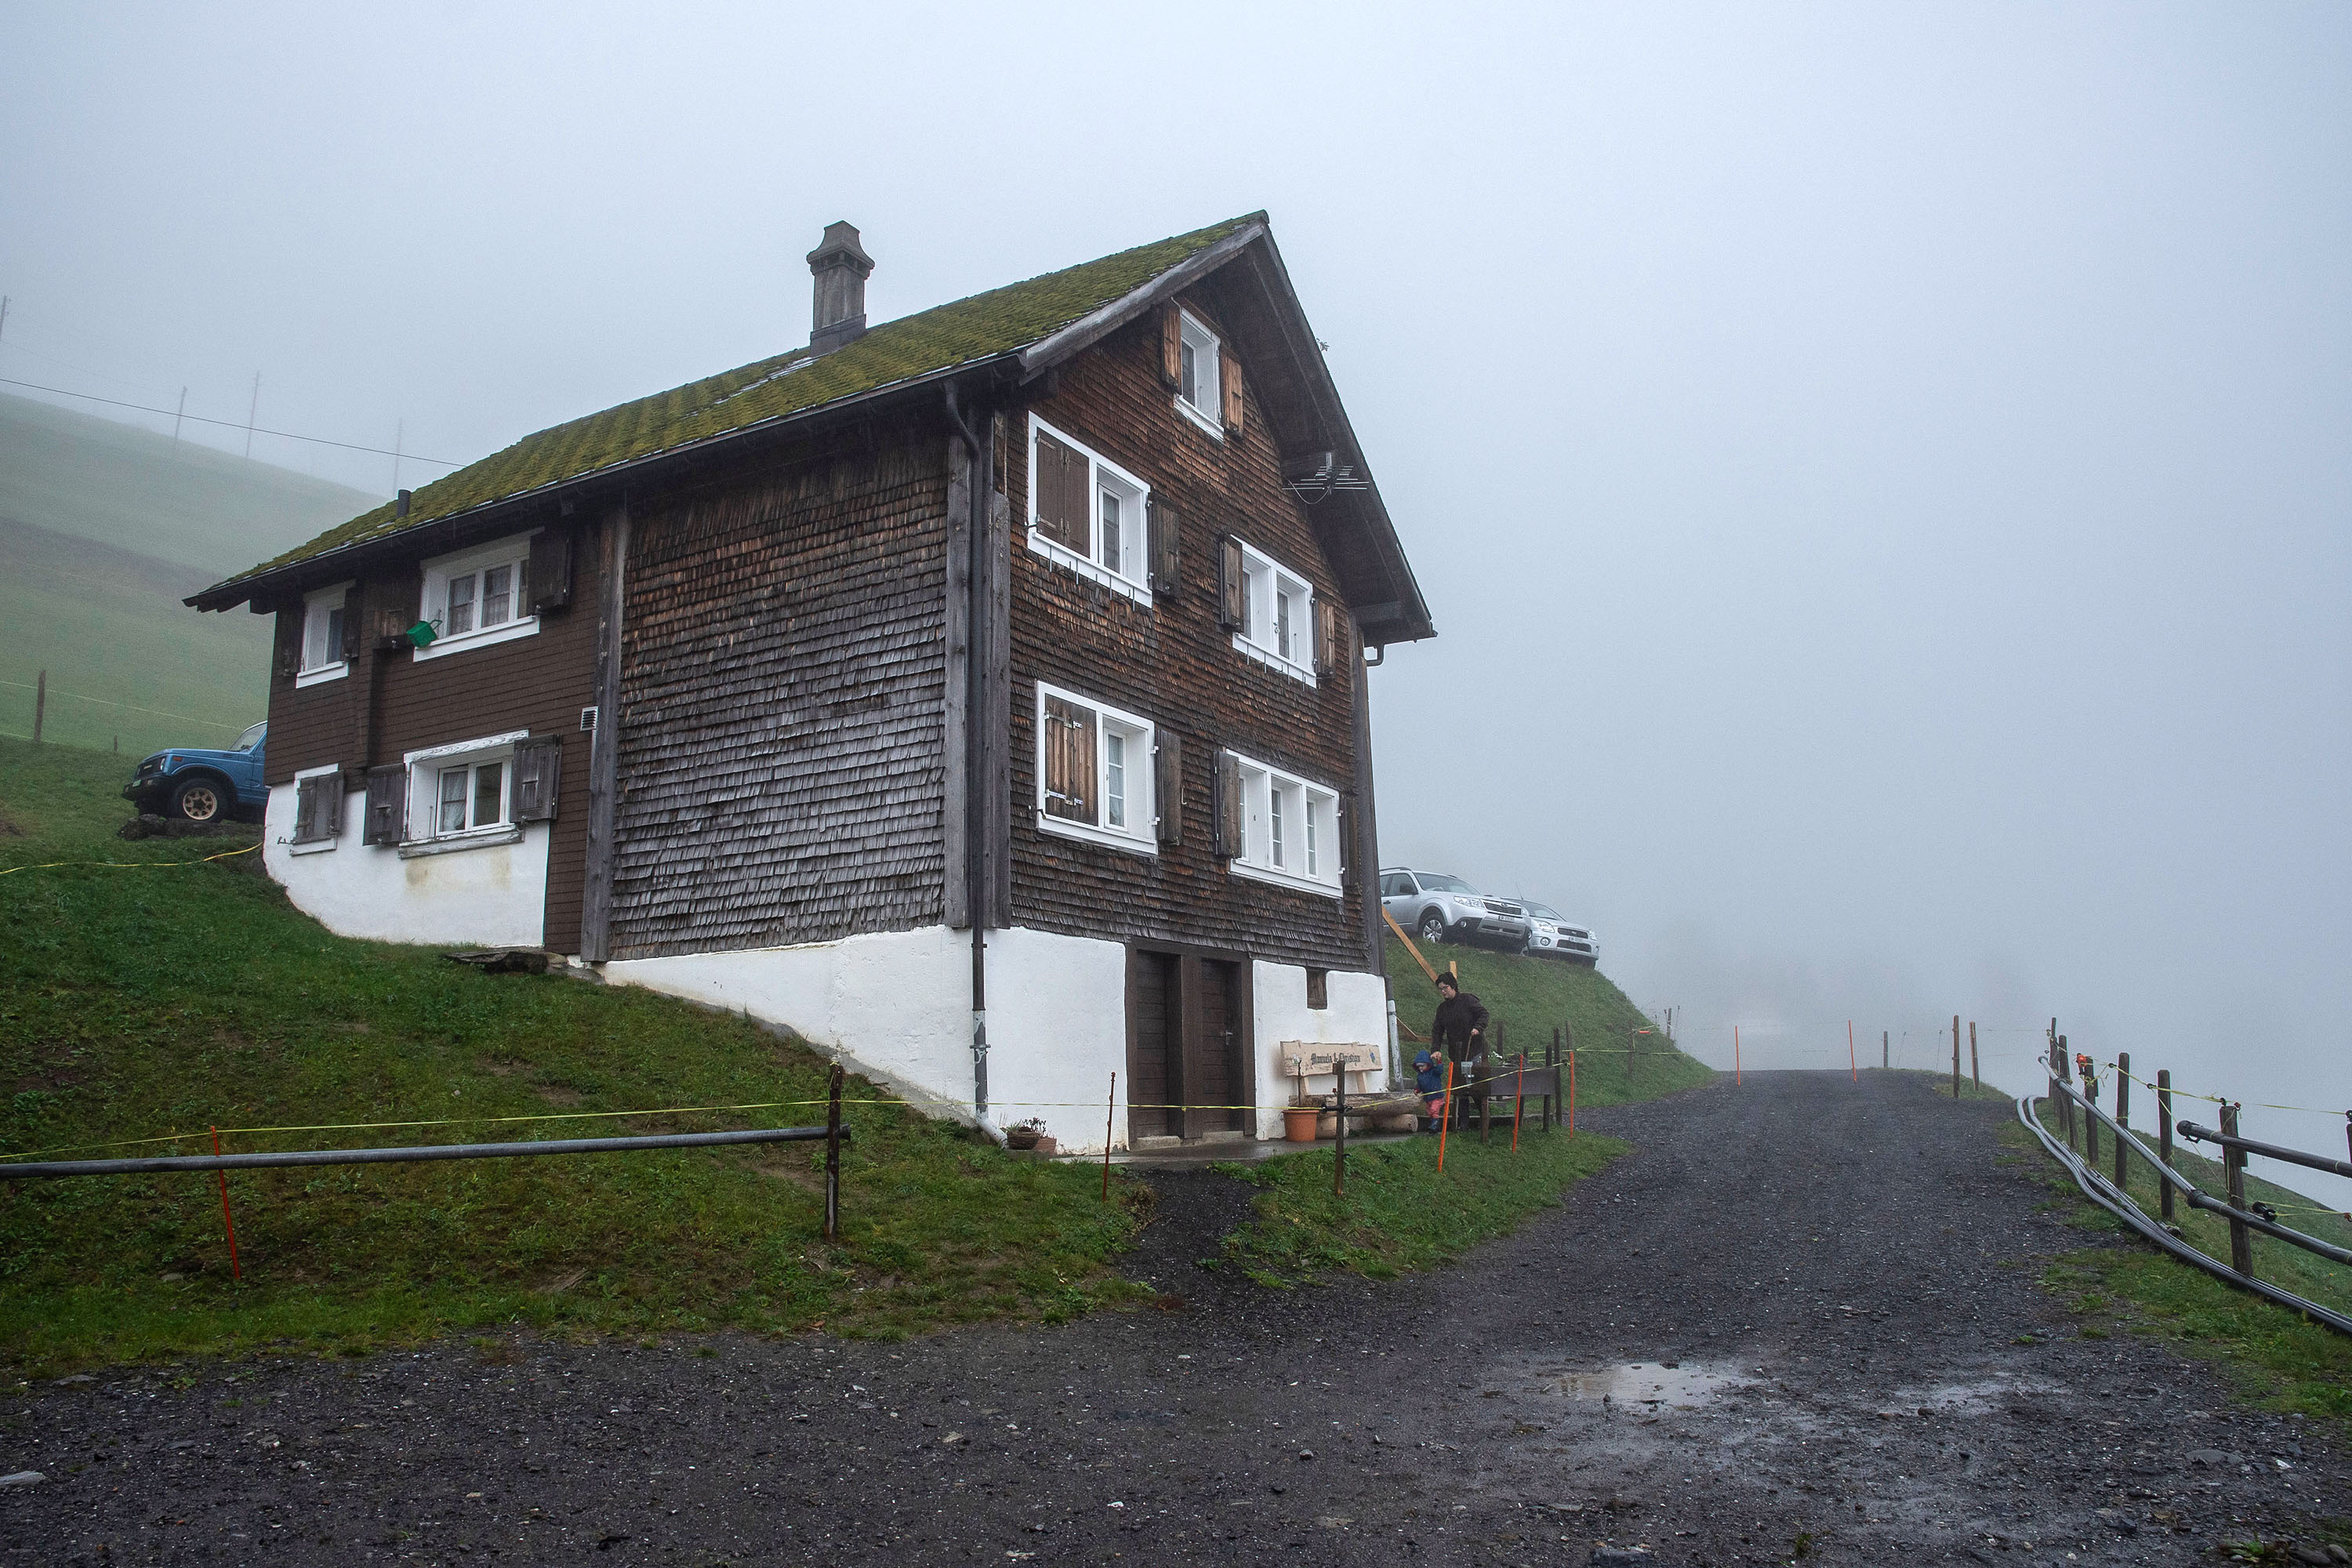  La maison de famille Arnold à Spiringen, canton d’Uri 